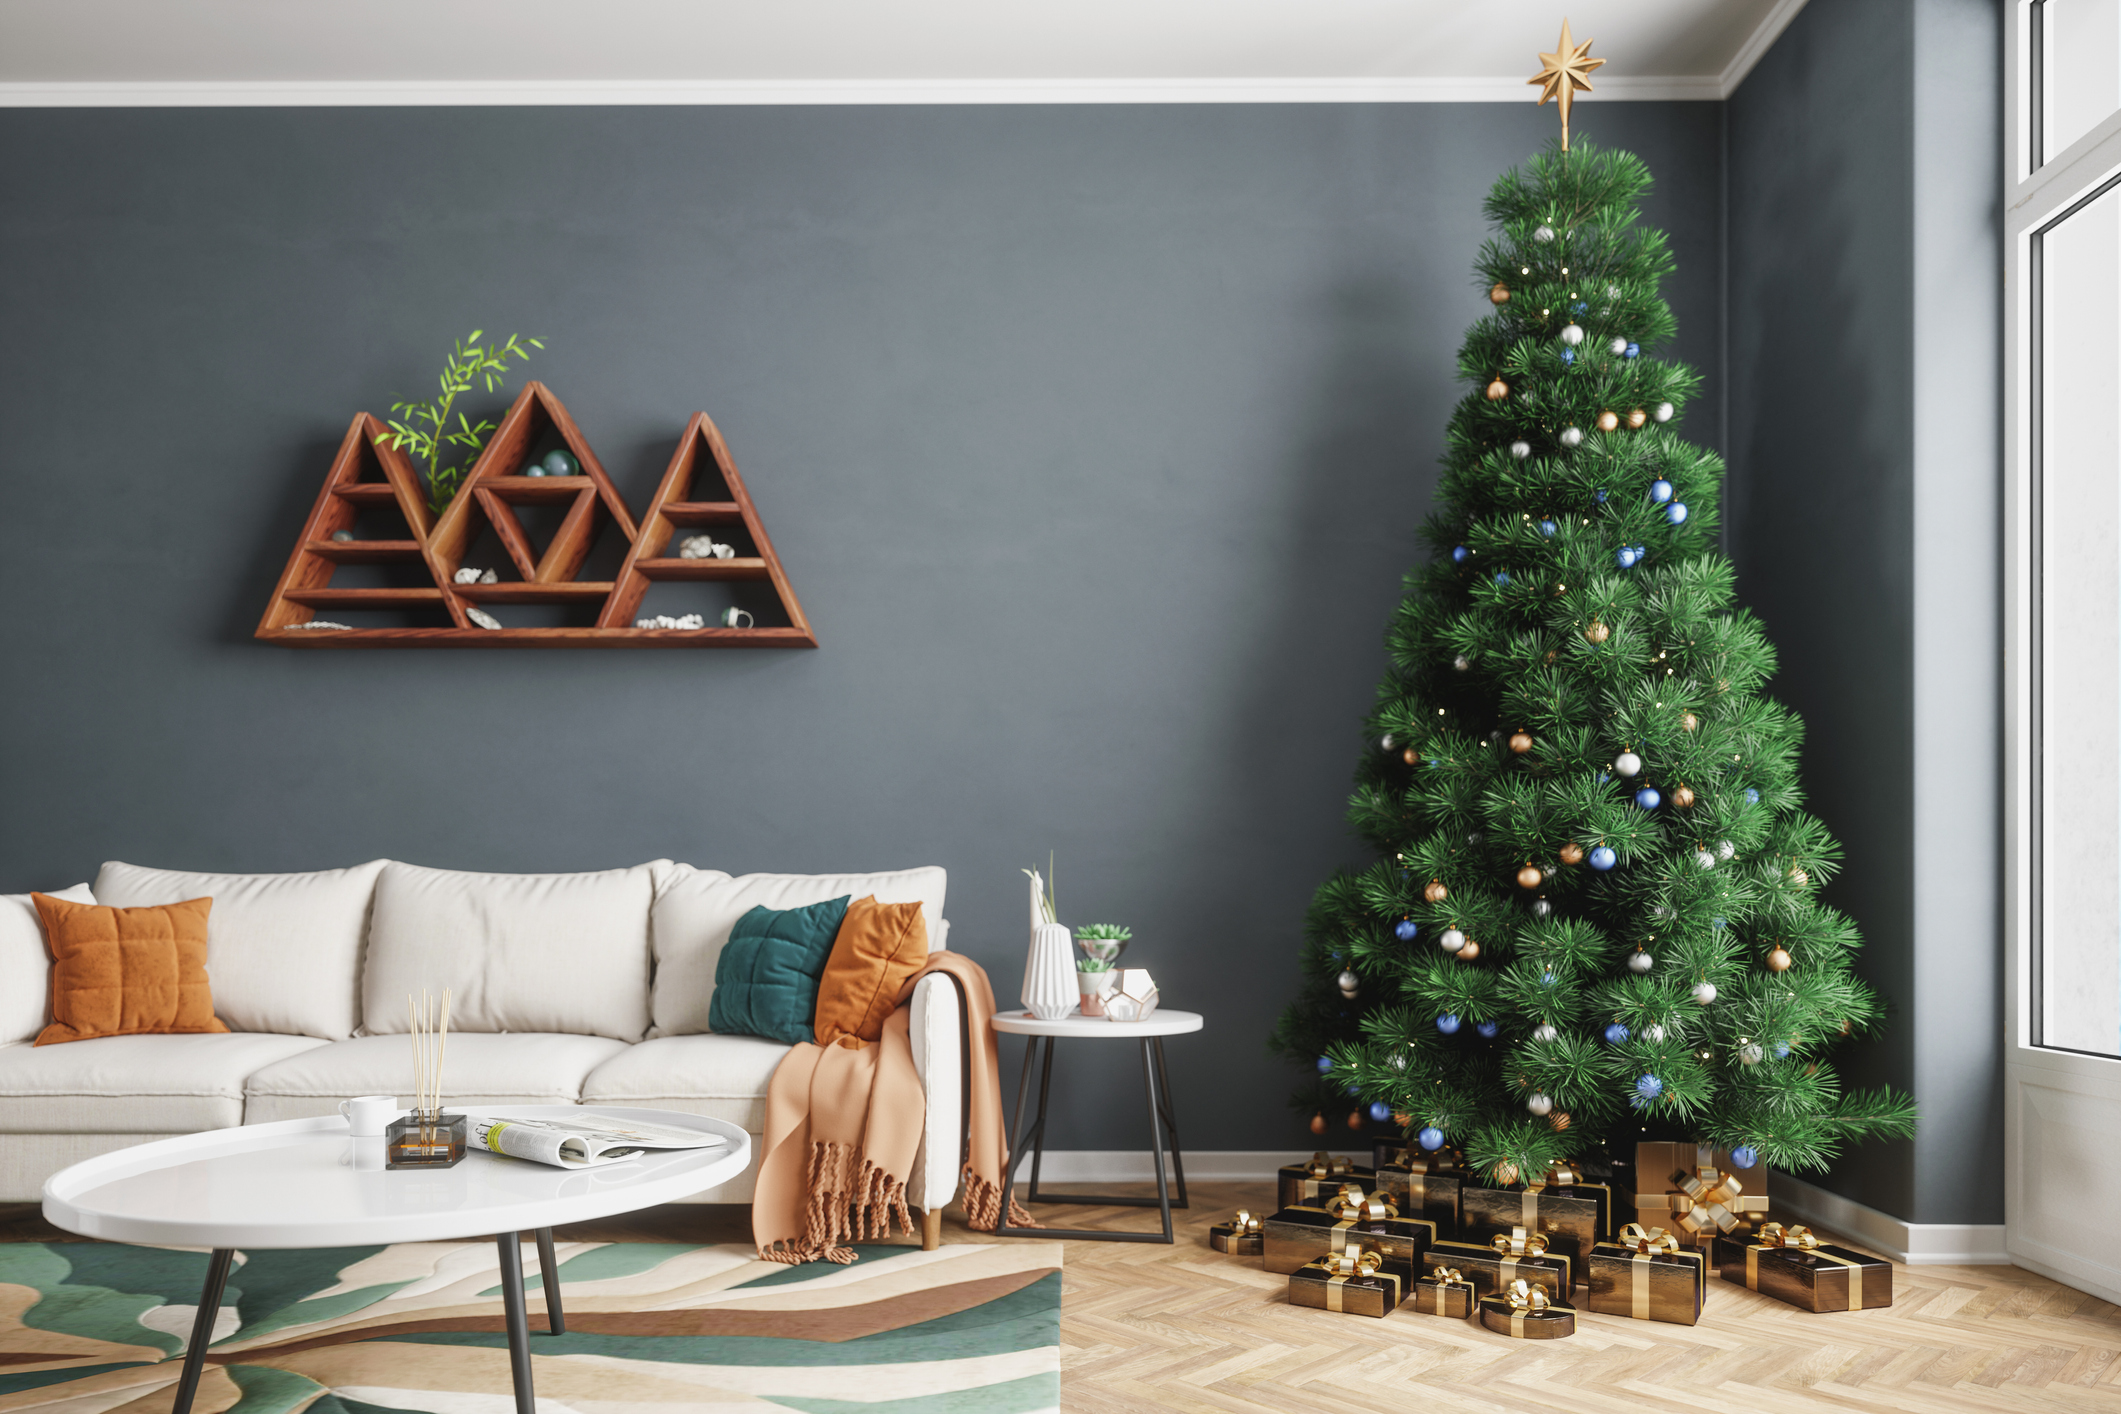 Living Room And Christmas Tree